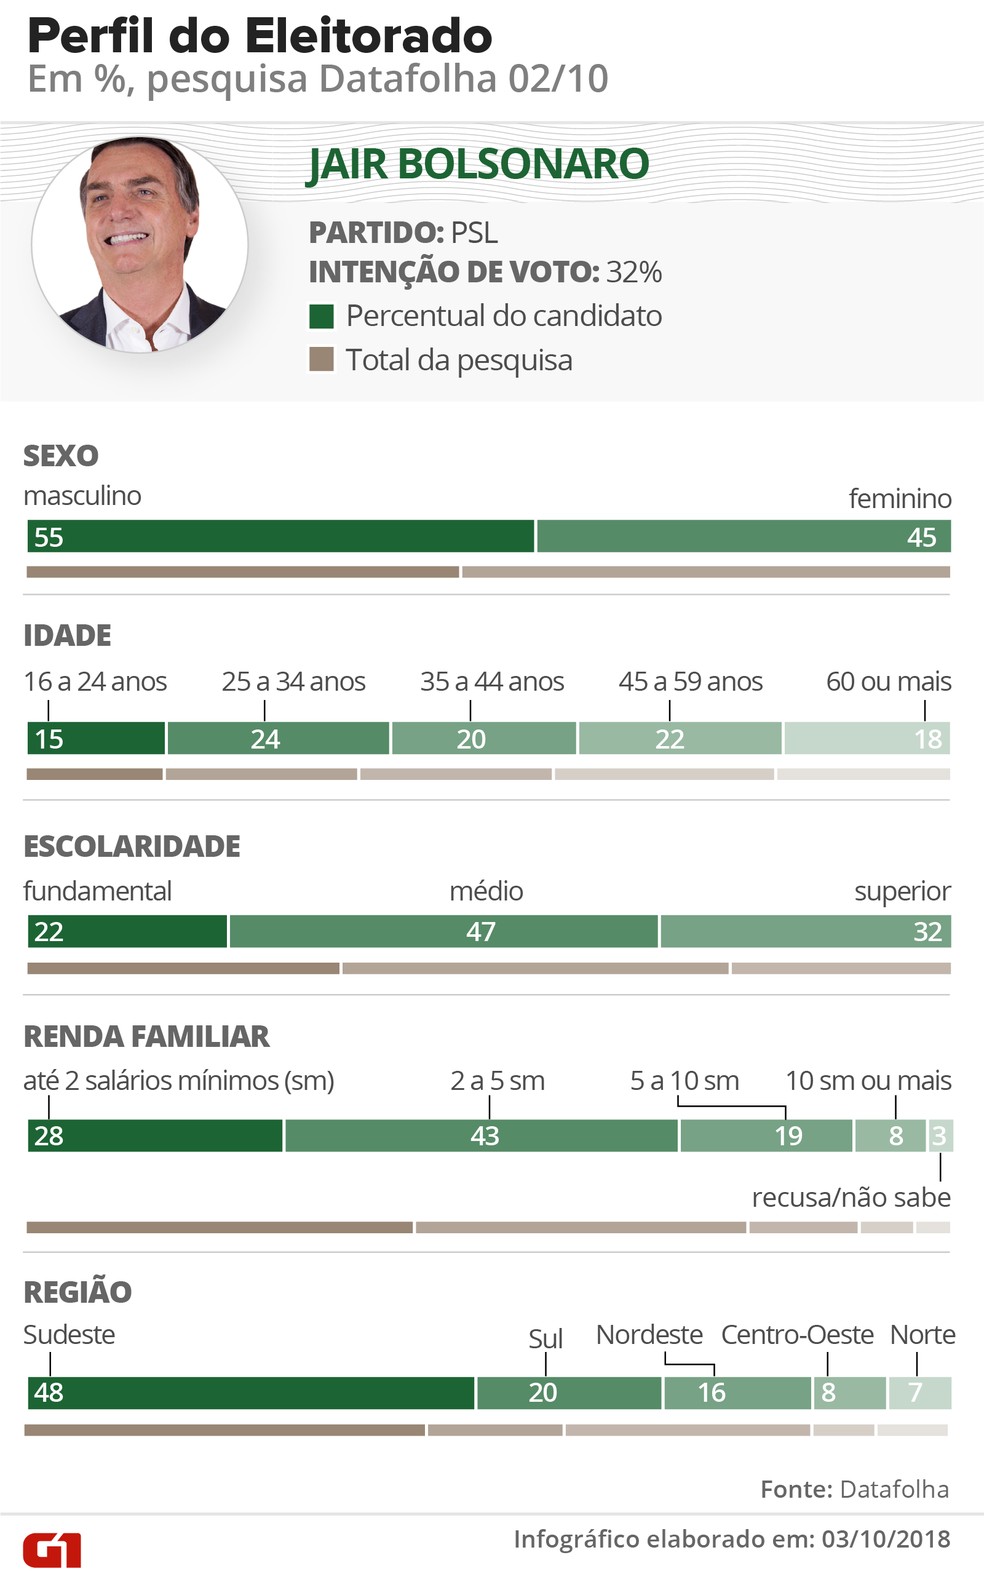 cards-candidatos-bolsonaro.png